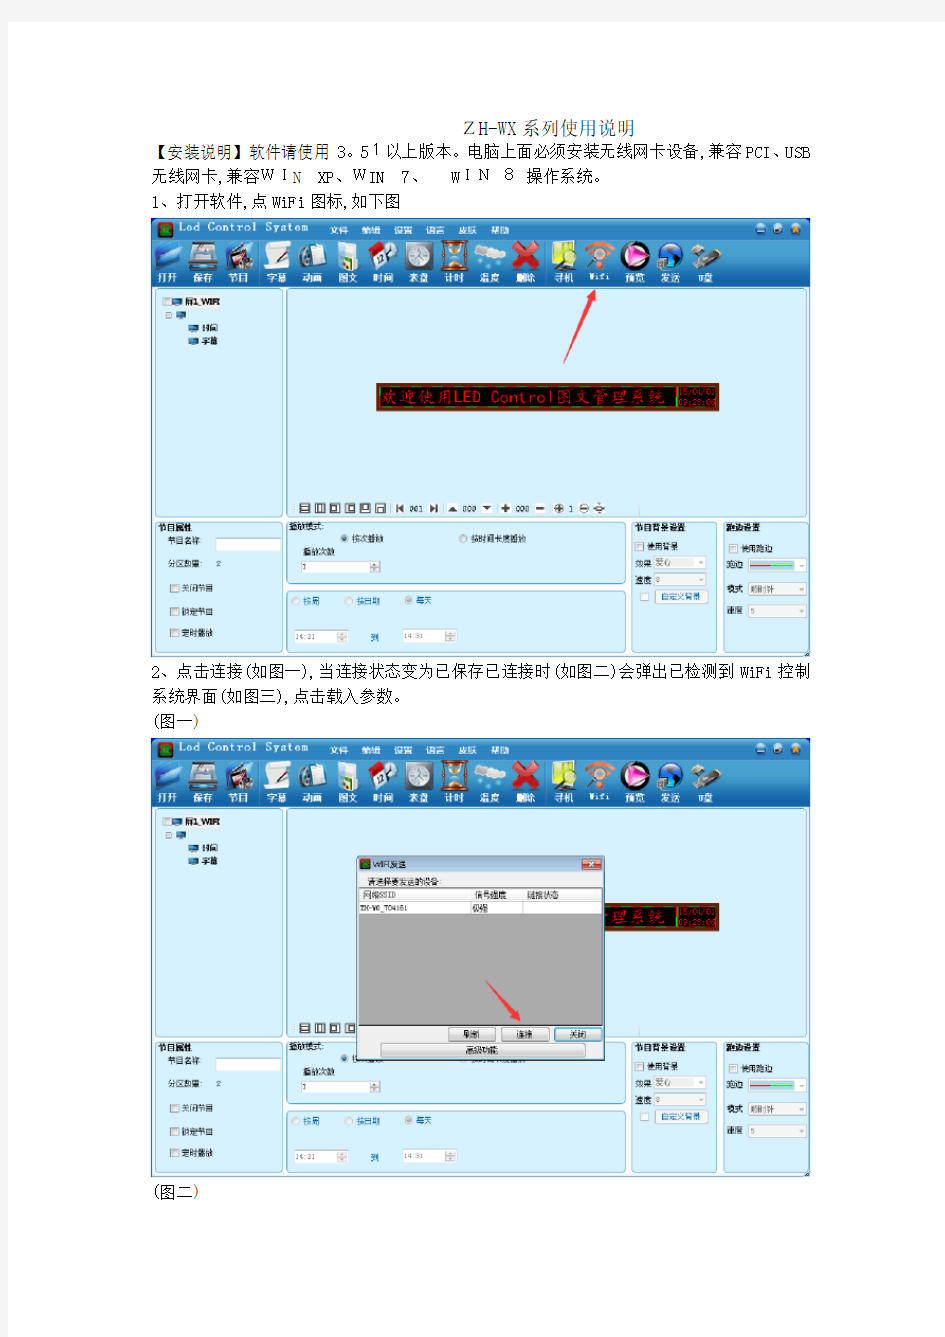 中航WiFi卡软件操作说明